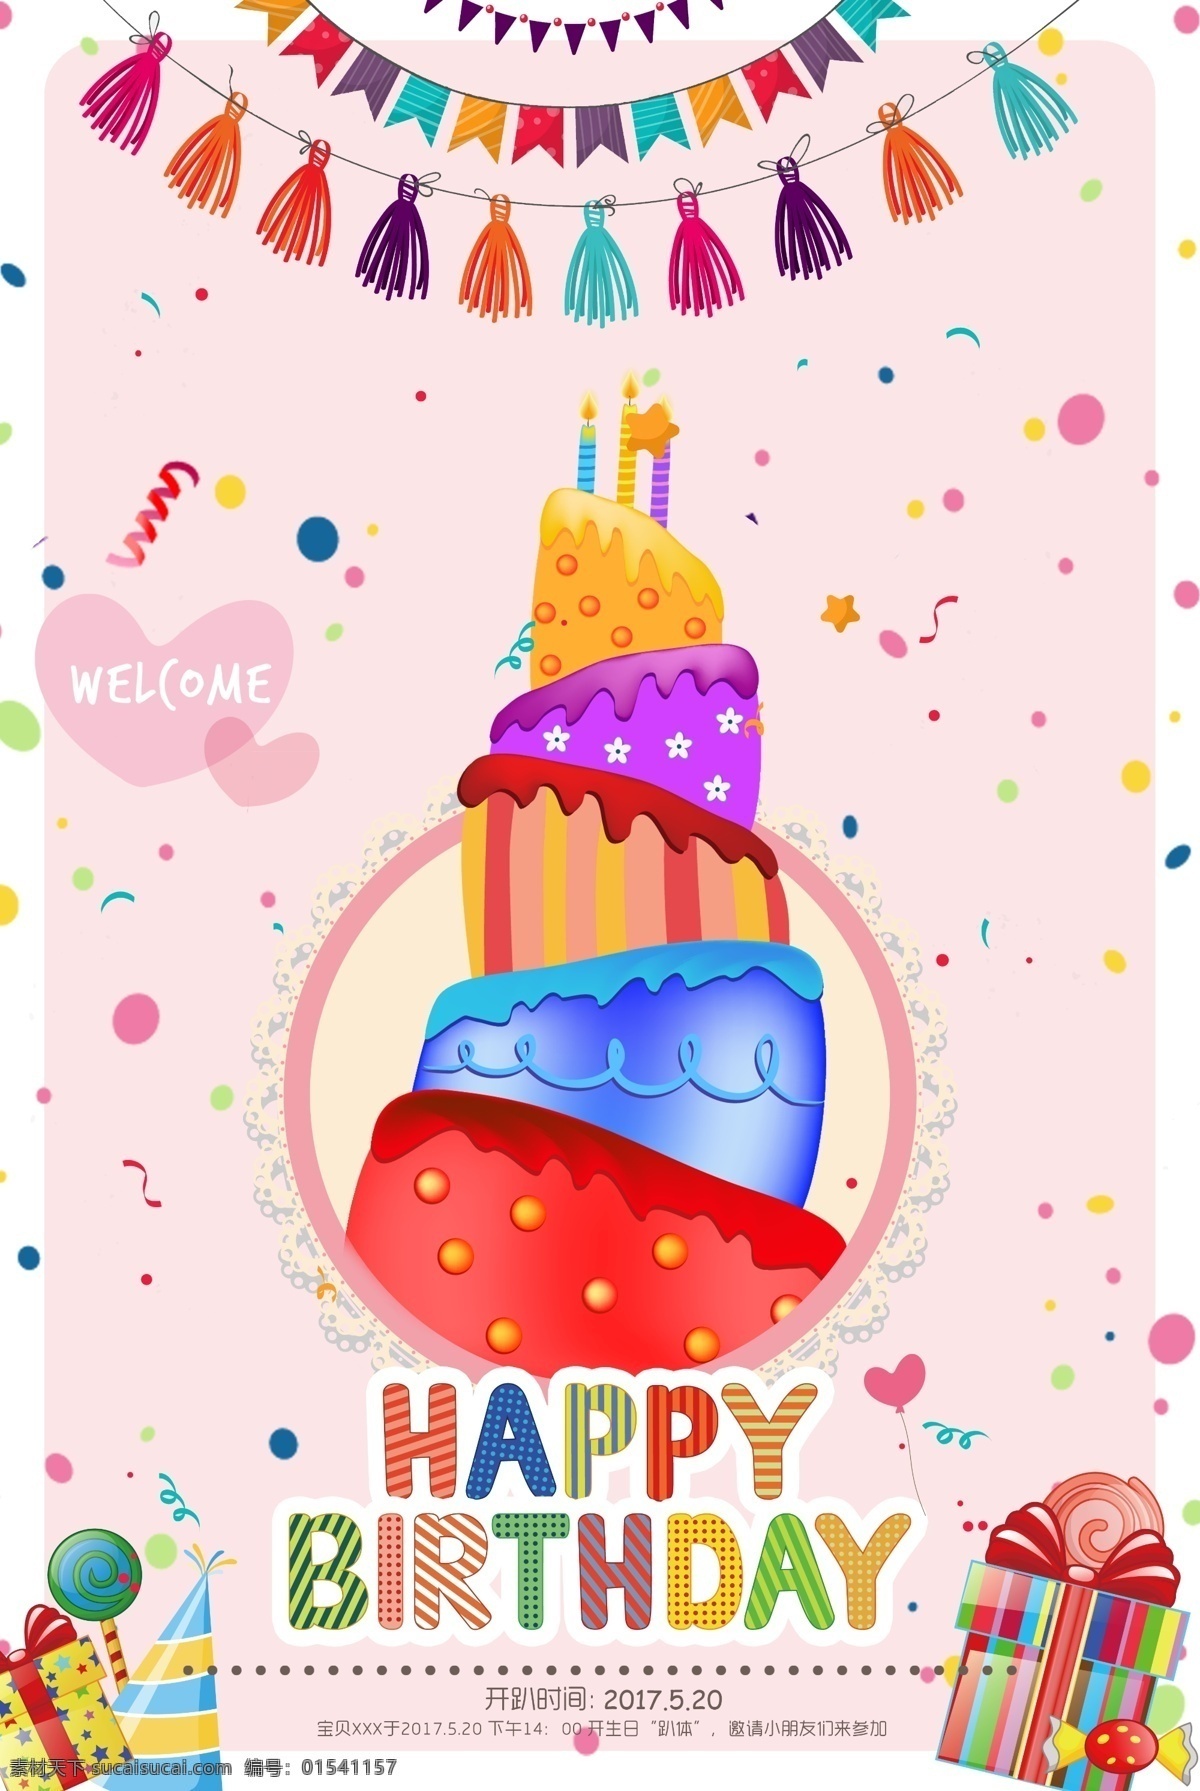 生日快乐 生日 快乐 happy birthday 礼包 彩带 蛋糕 蜡炉 卡通 生日帽